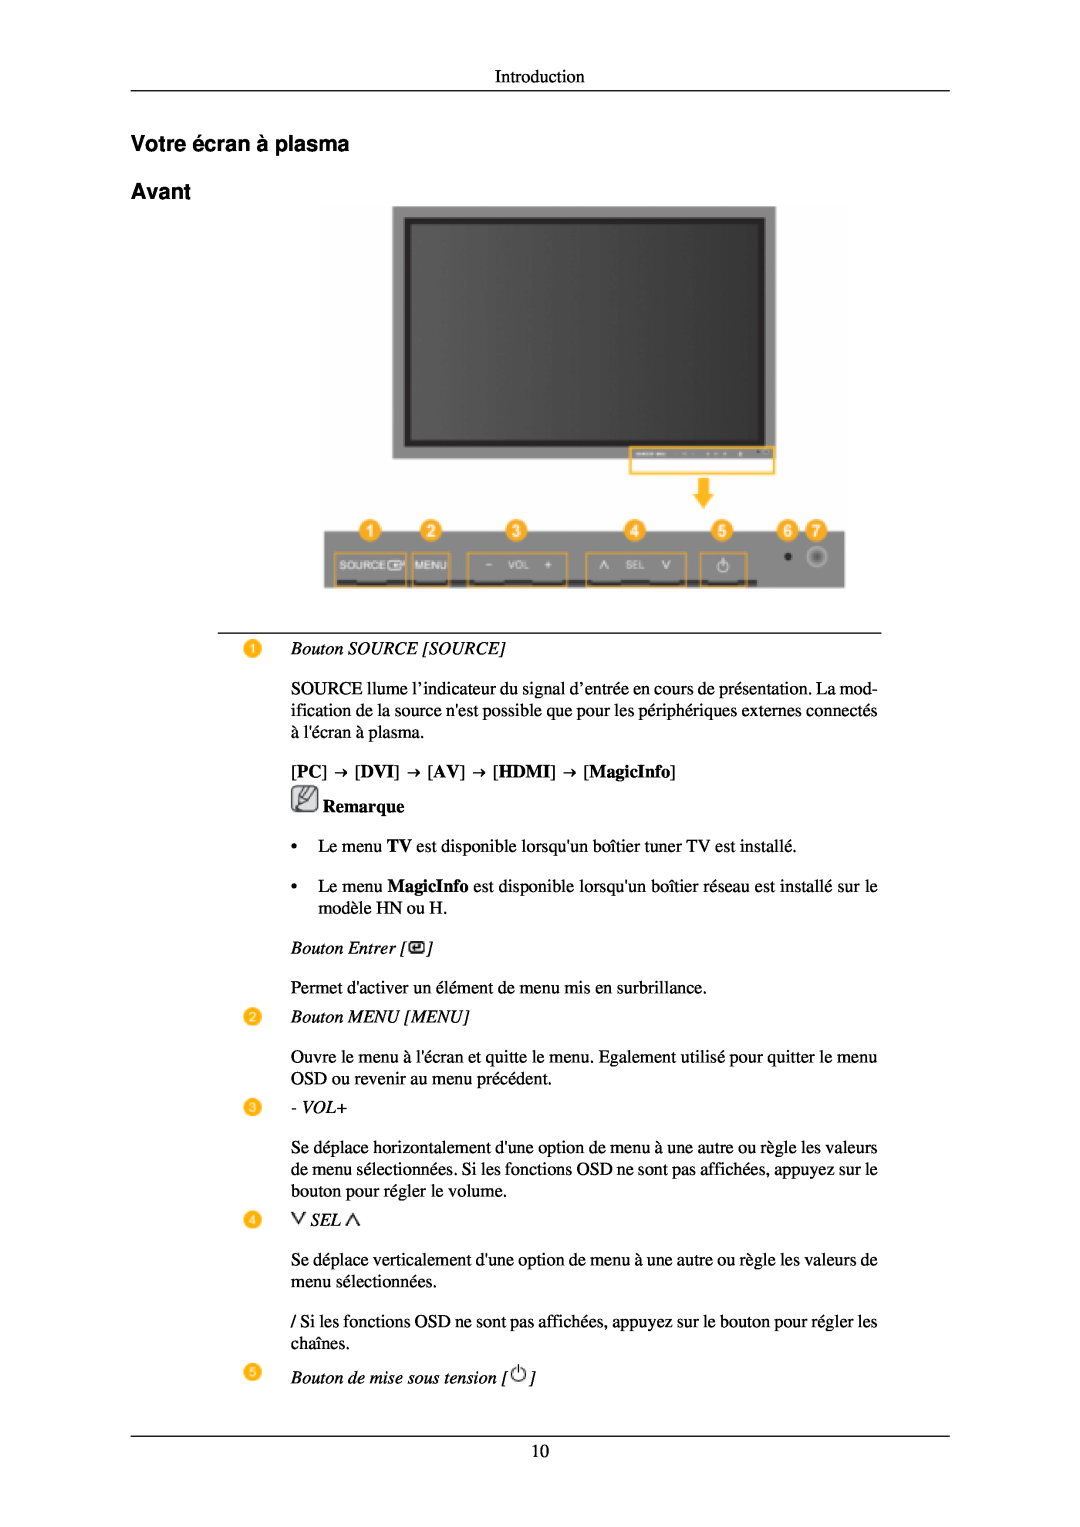 Samsung PH42KLPLBC/EN Votre écran à plasma Avant, Bouton SOURCE SOURCE, PC → DVI → AV → HDMI → MagicInfo Remarque, Vol+ 